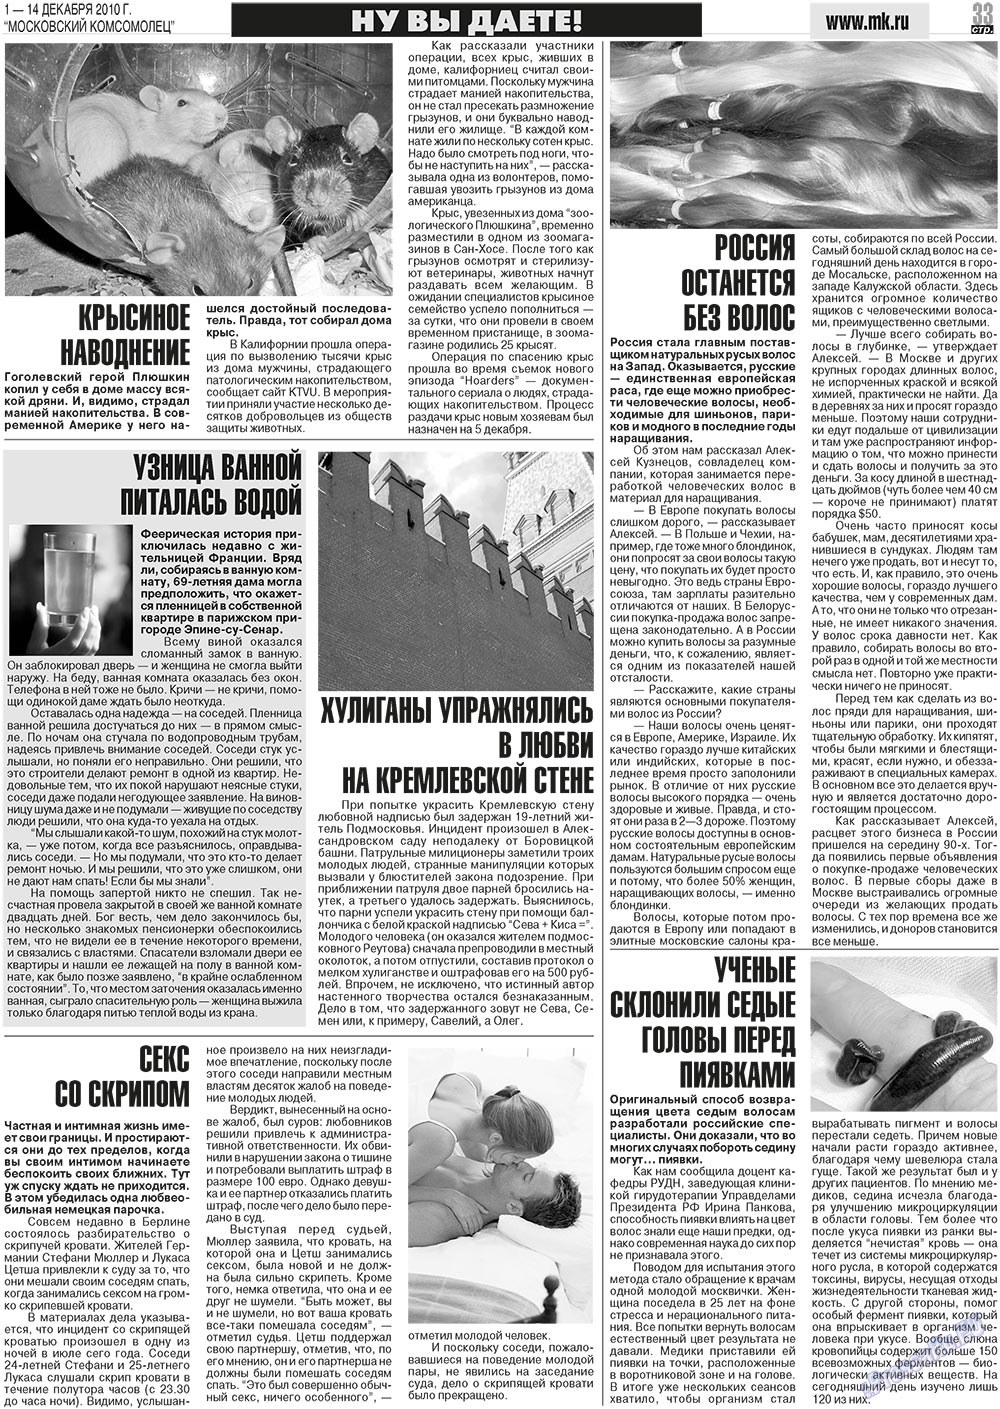 МК Испания, газета. 2010 №48 стр.33